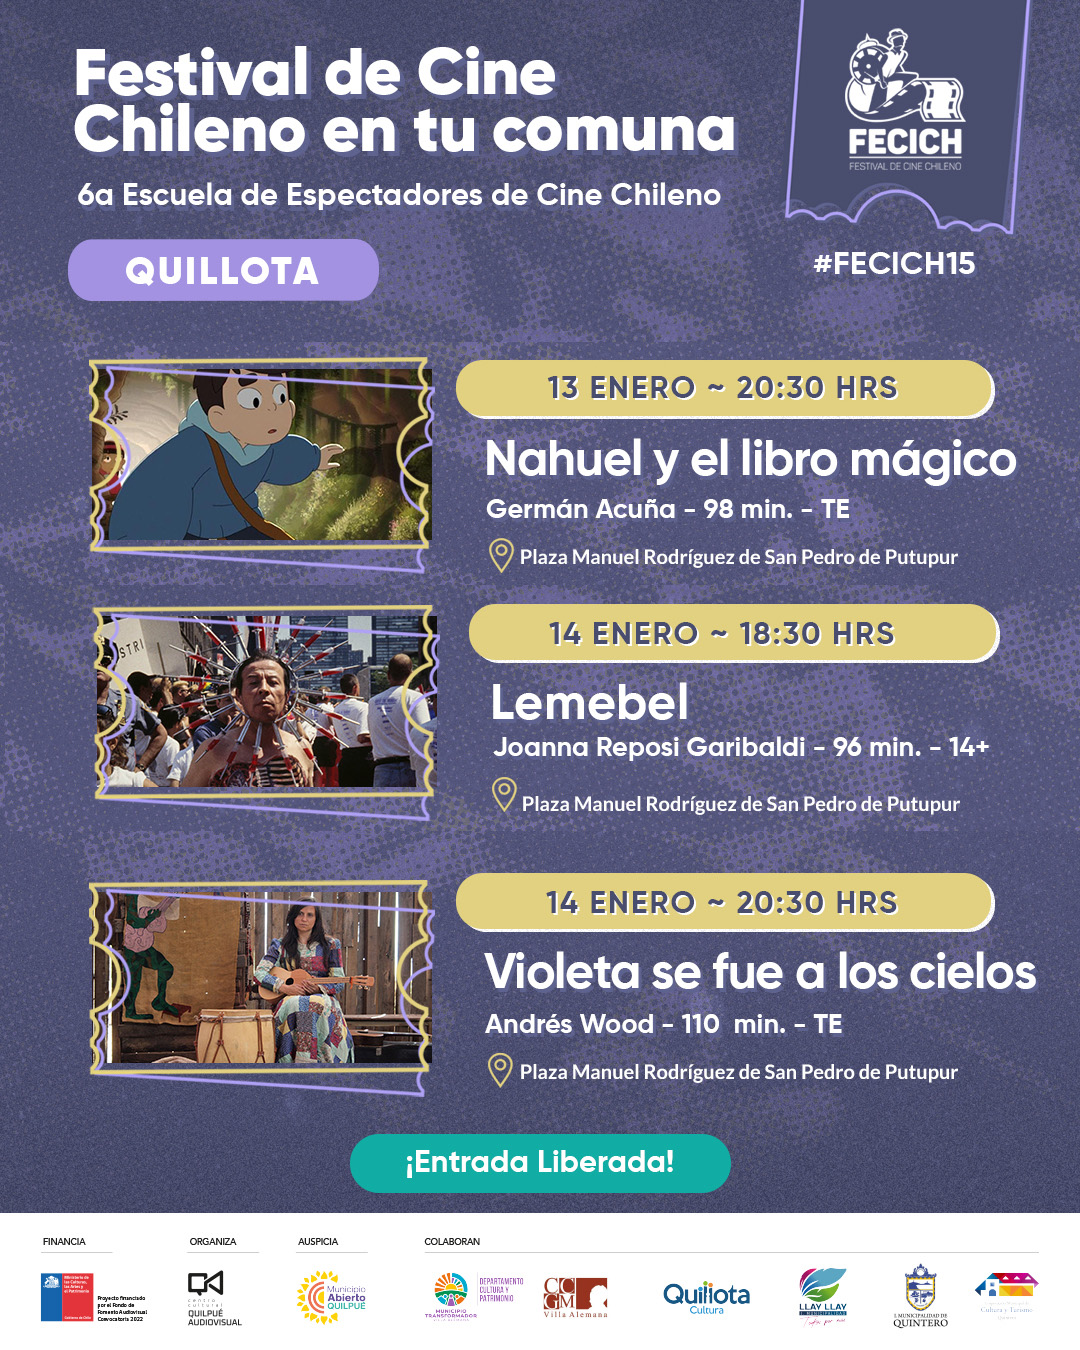 El Festival de Cine Chileno FECICH llega a Quillota celebrando sus 15 años